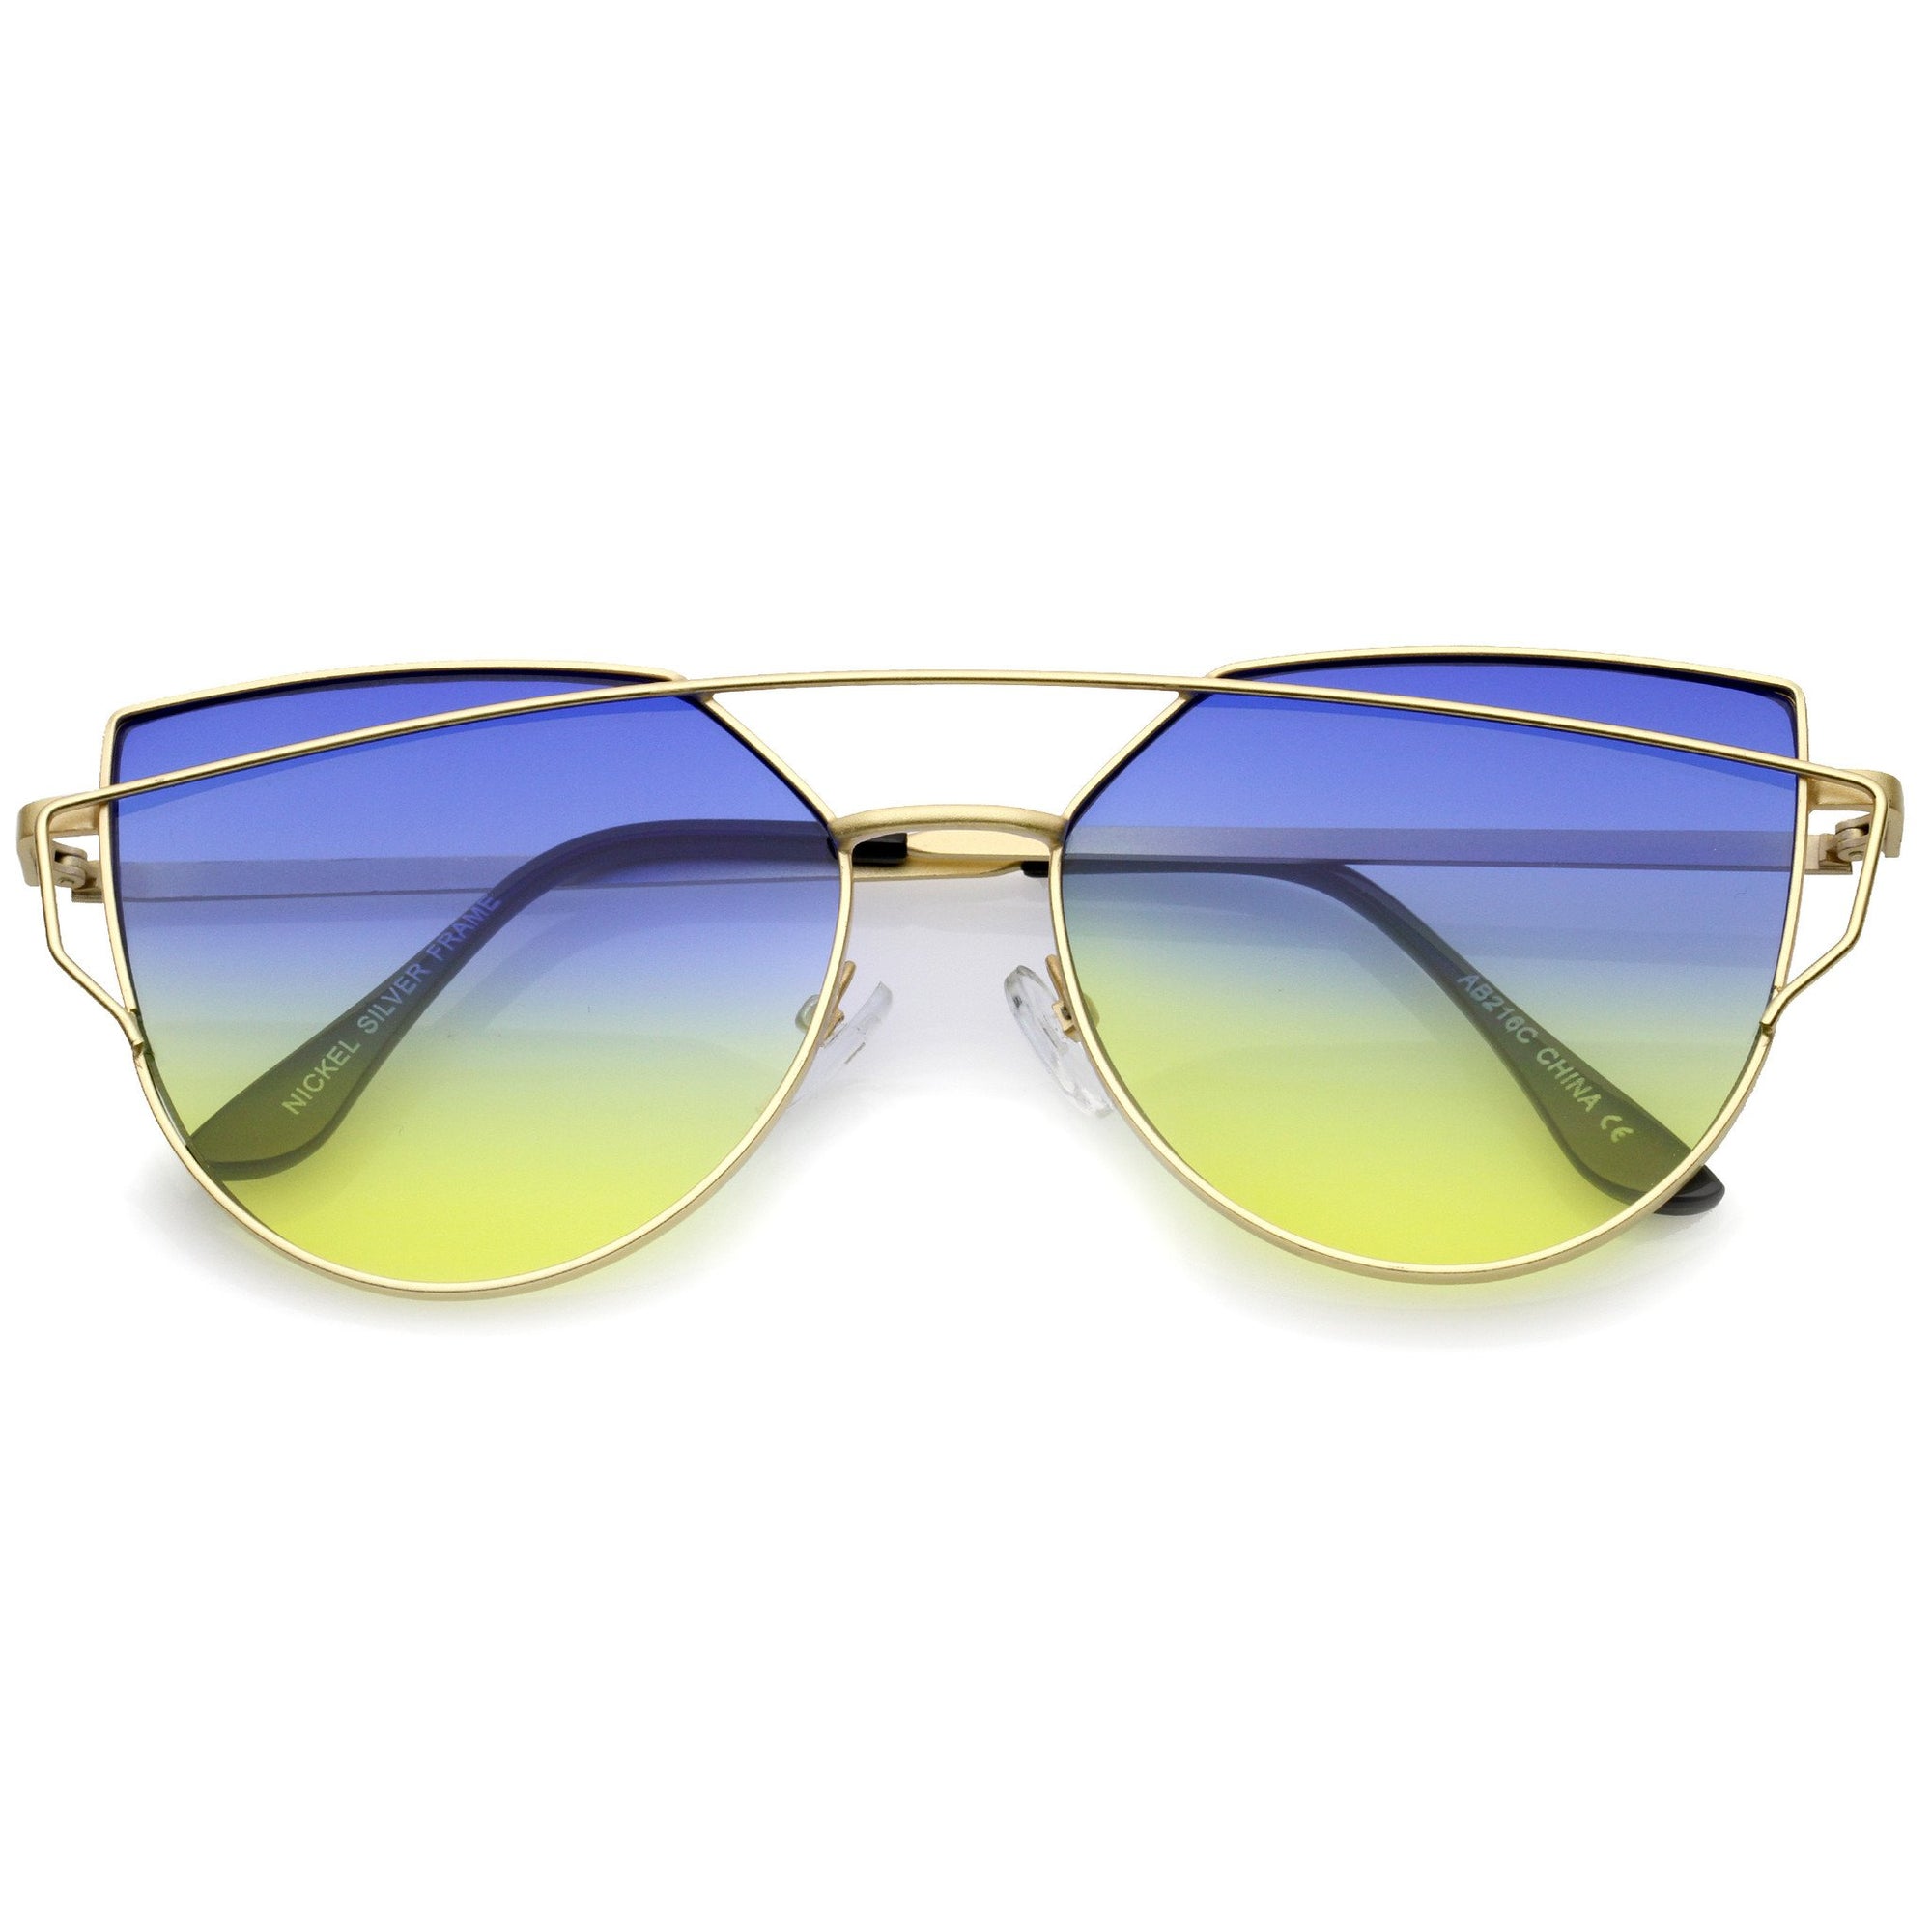 Women's Retro Modern Cross Bar Gradient Lens Sunglasses A952